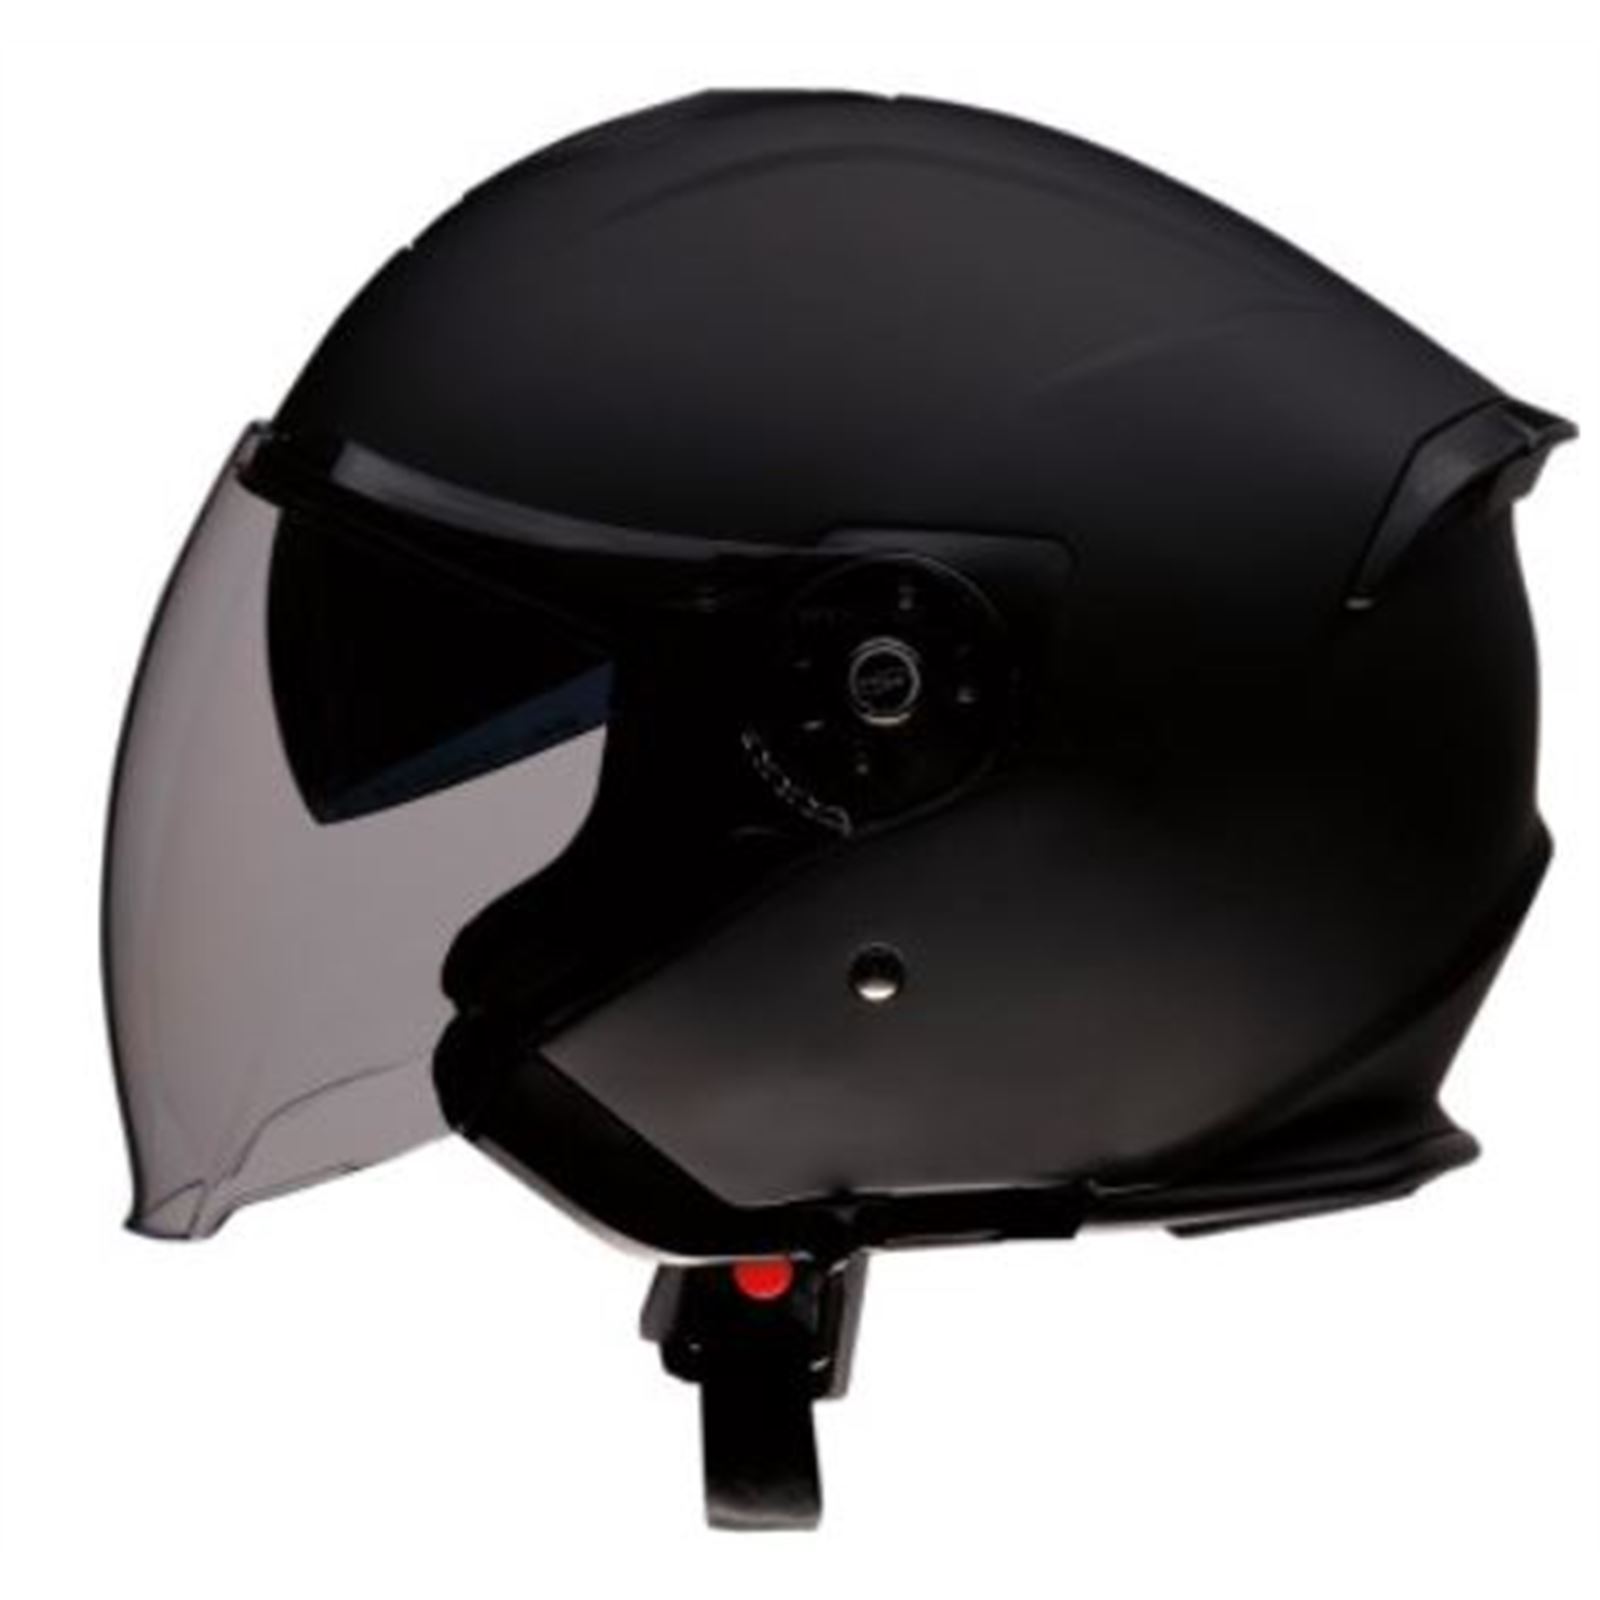 Z1R Road Maxx Helmet - Flat Black - Large